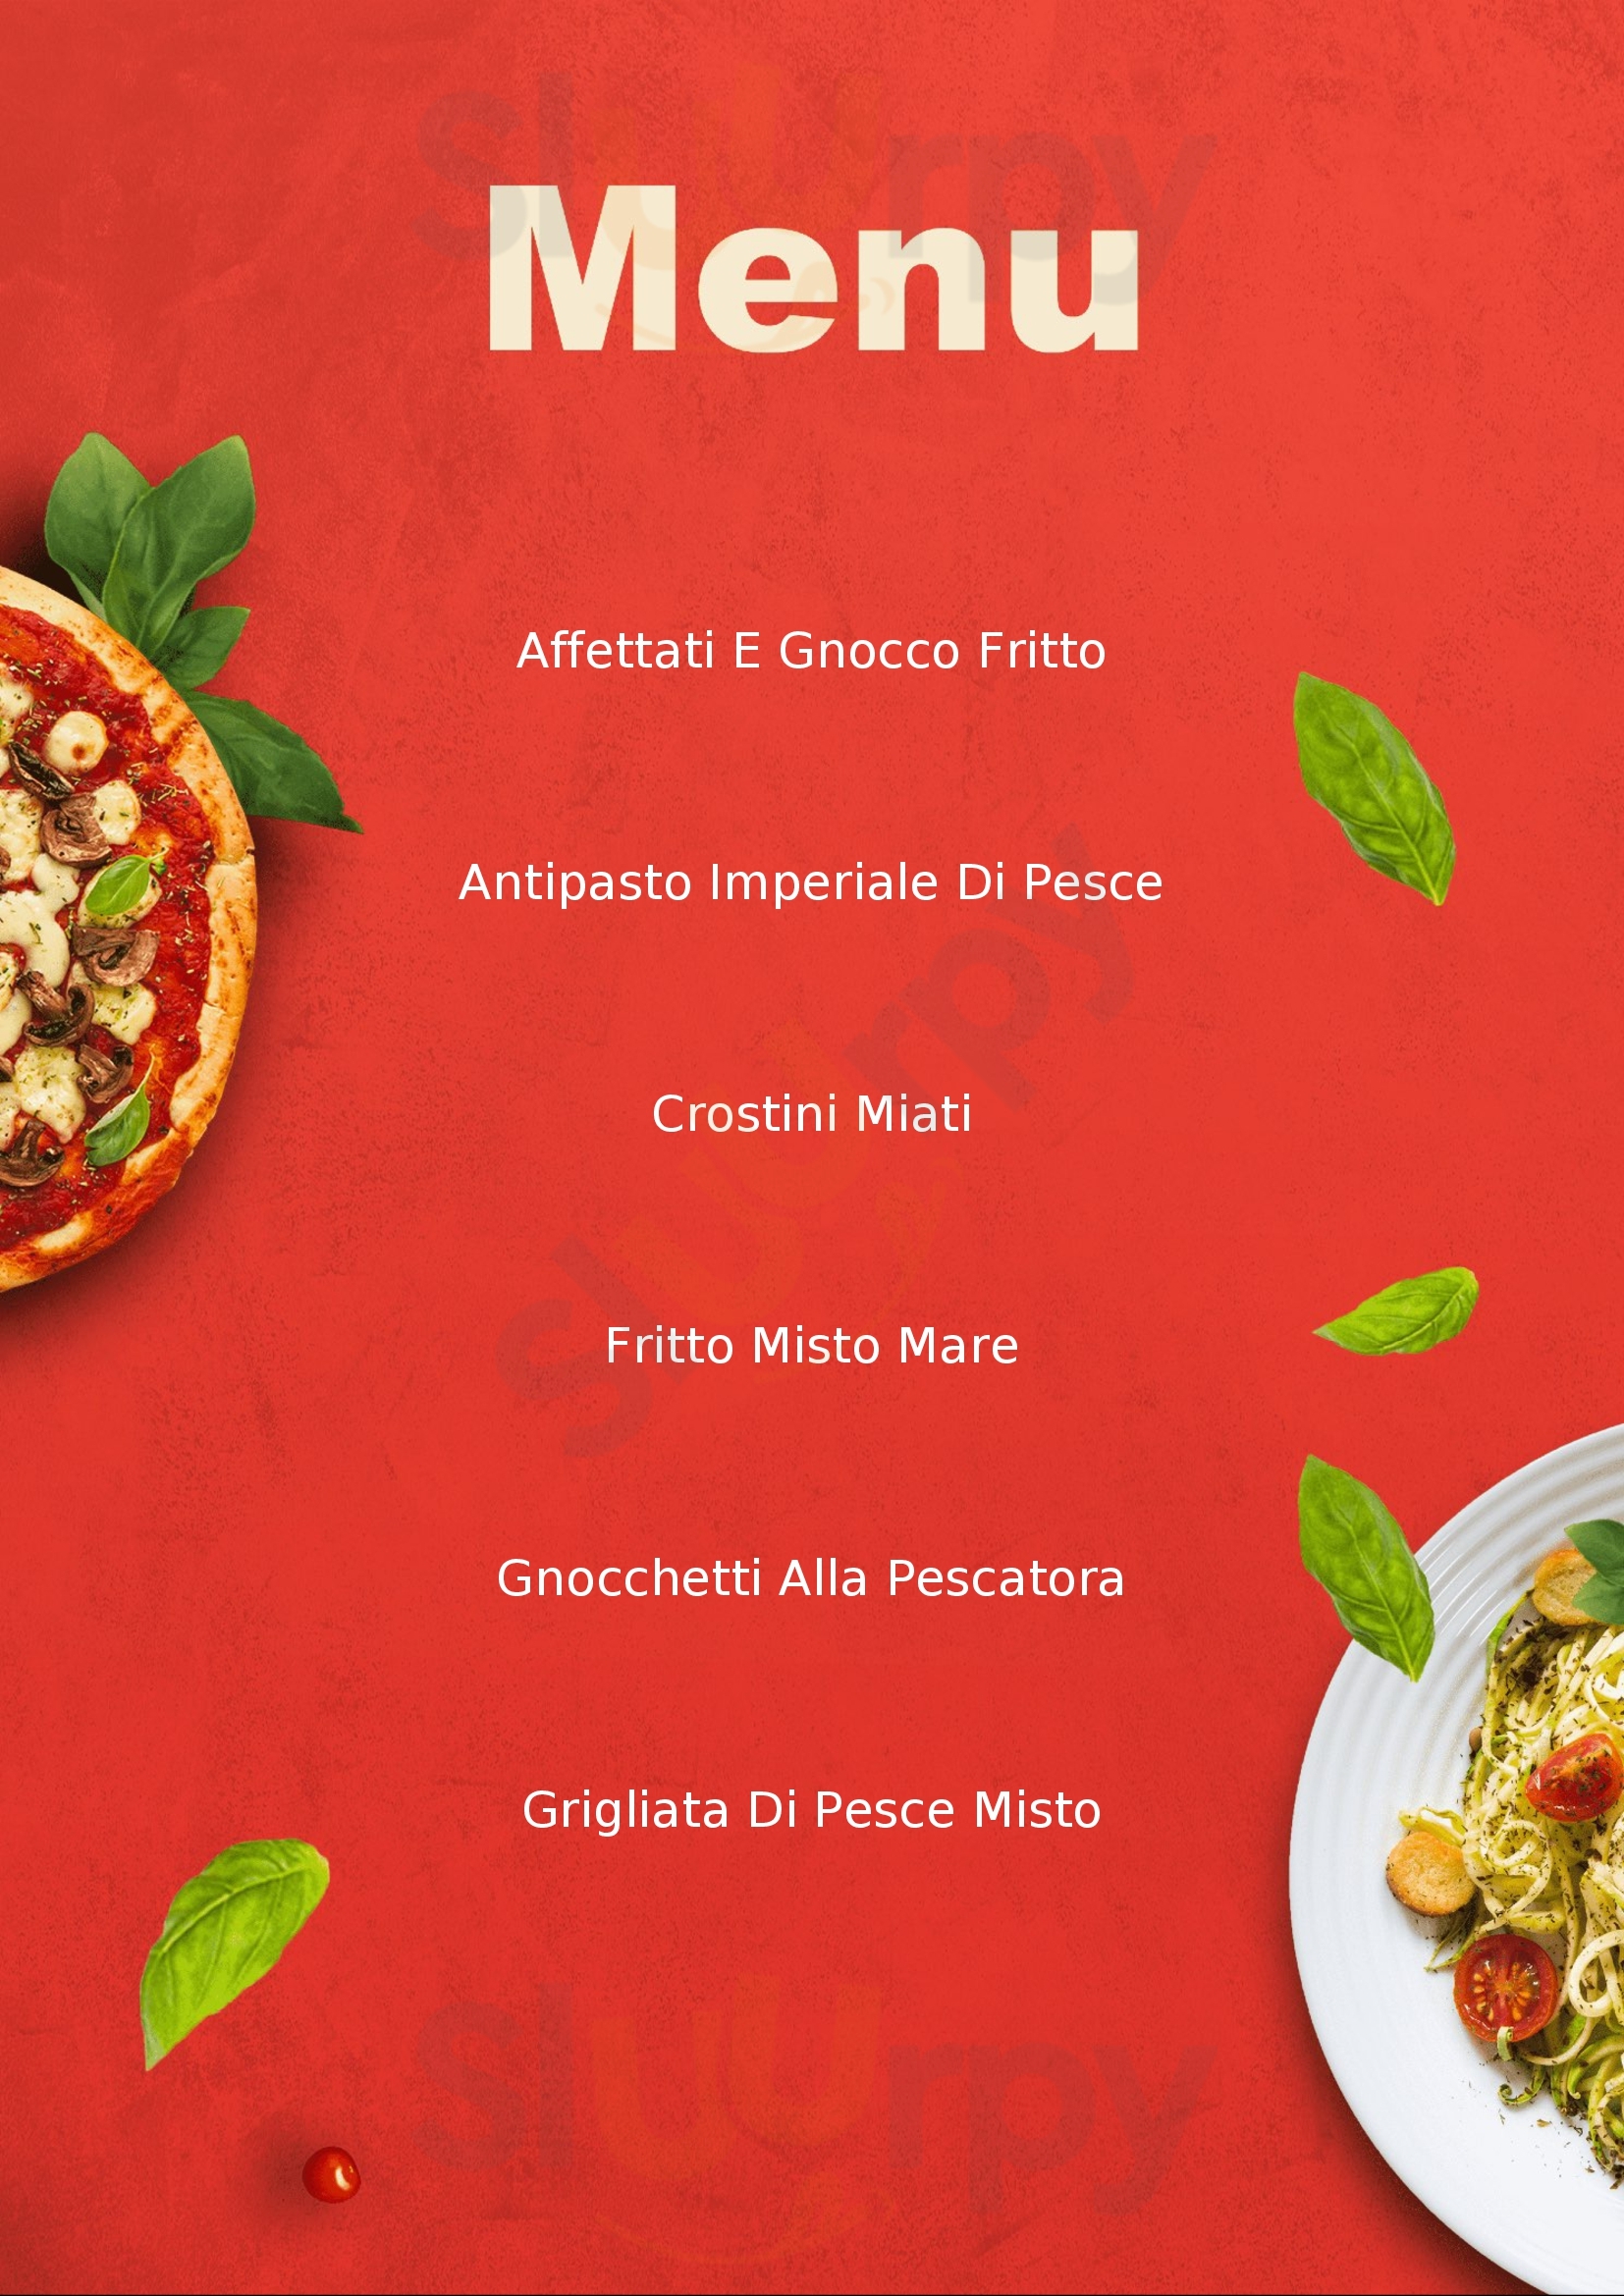 La Masseria Pizzeria Ristorante Imola menù 1 pagina